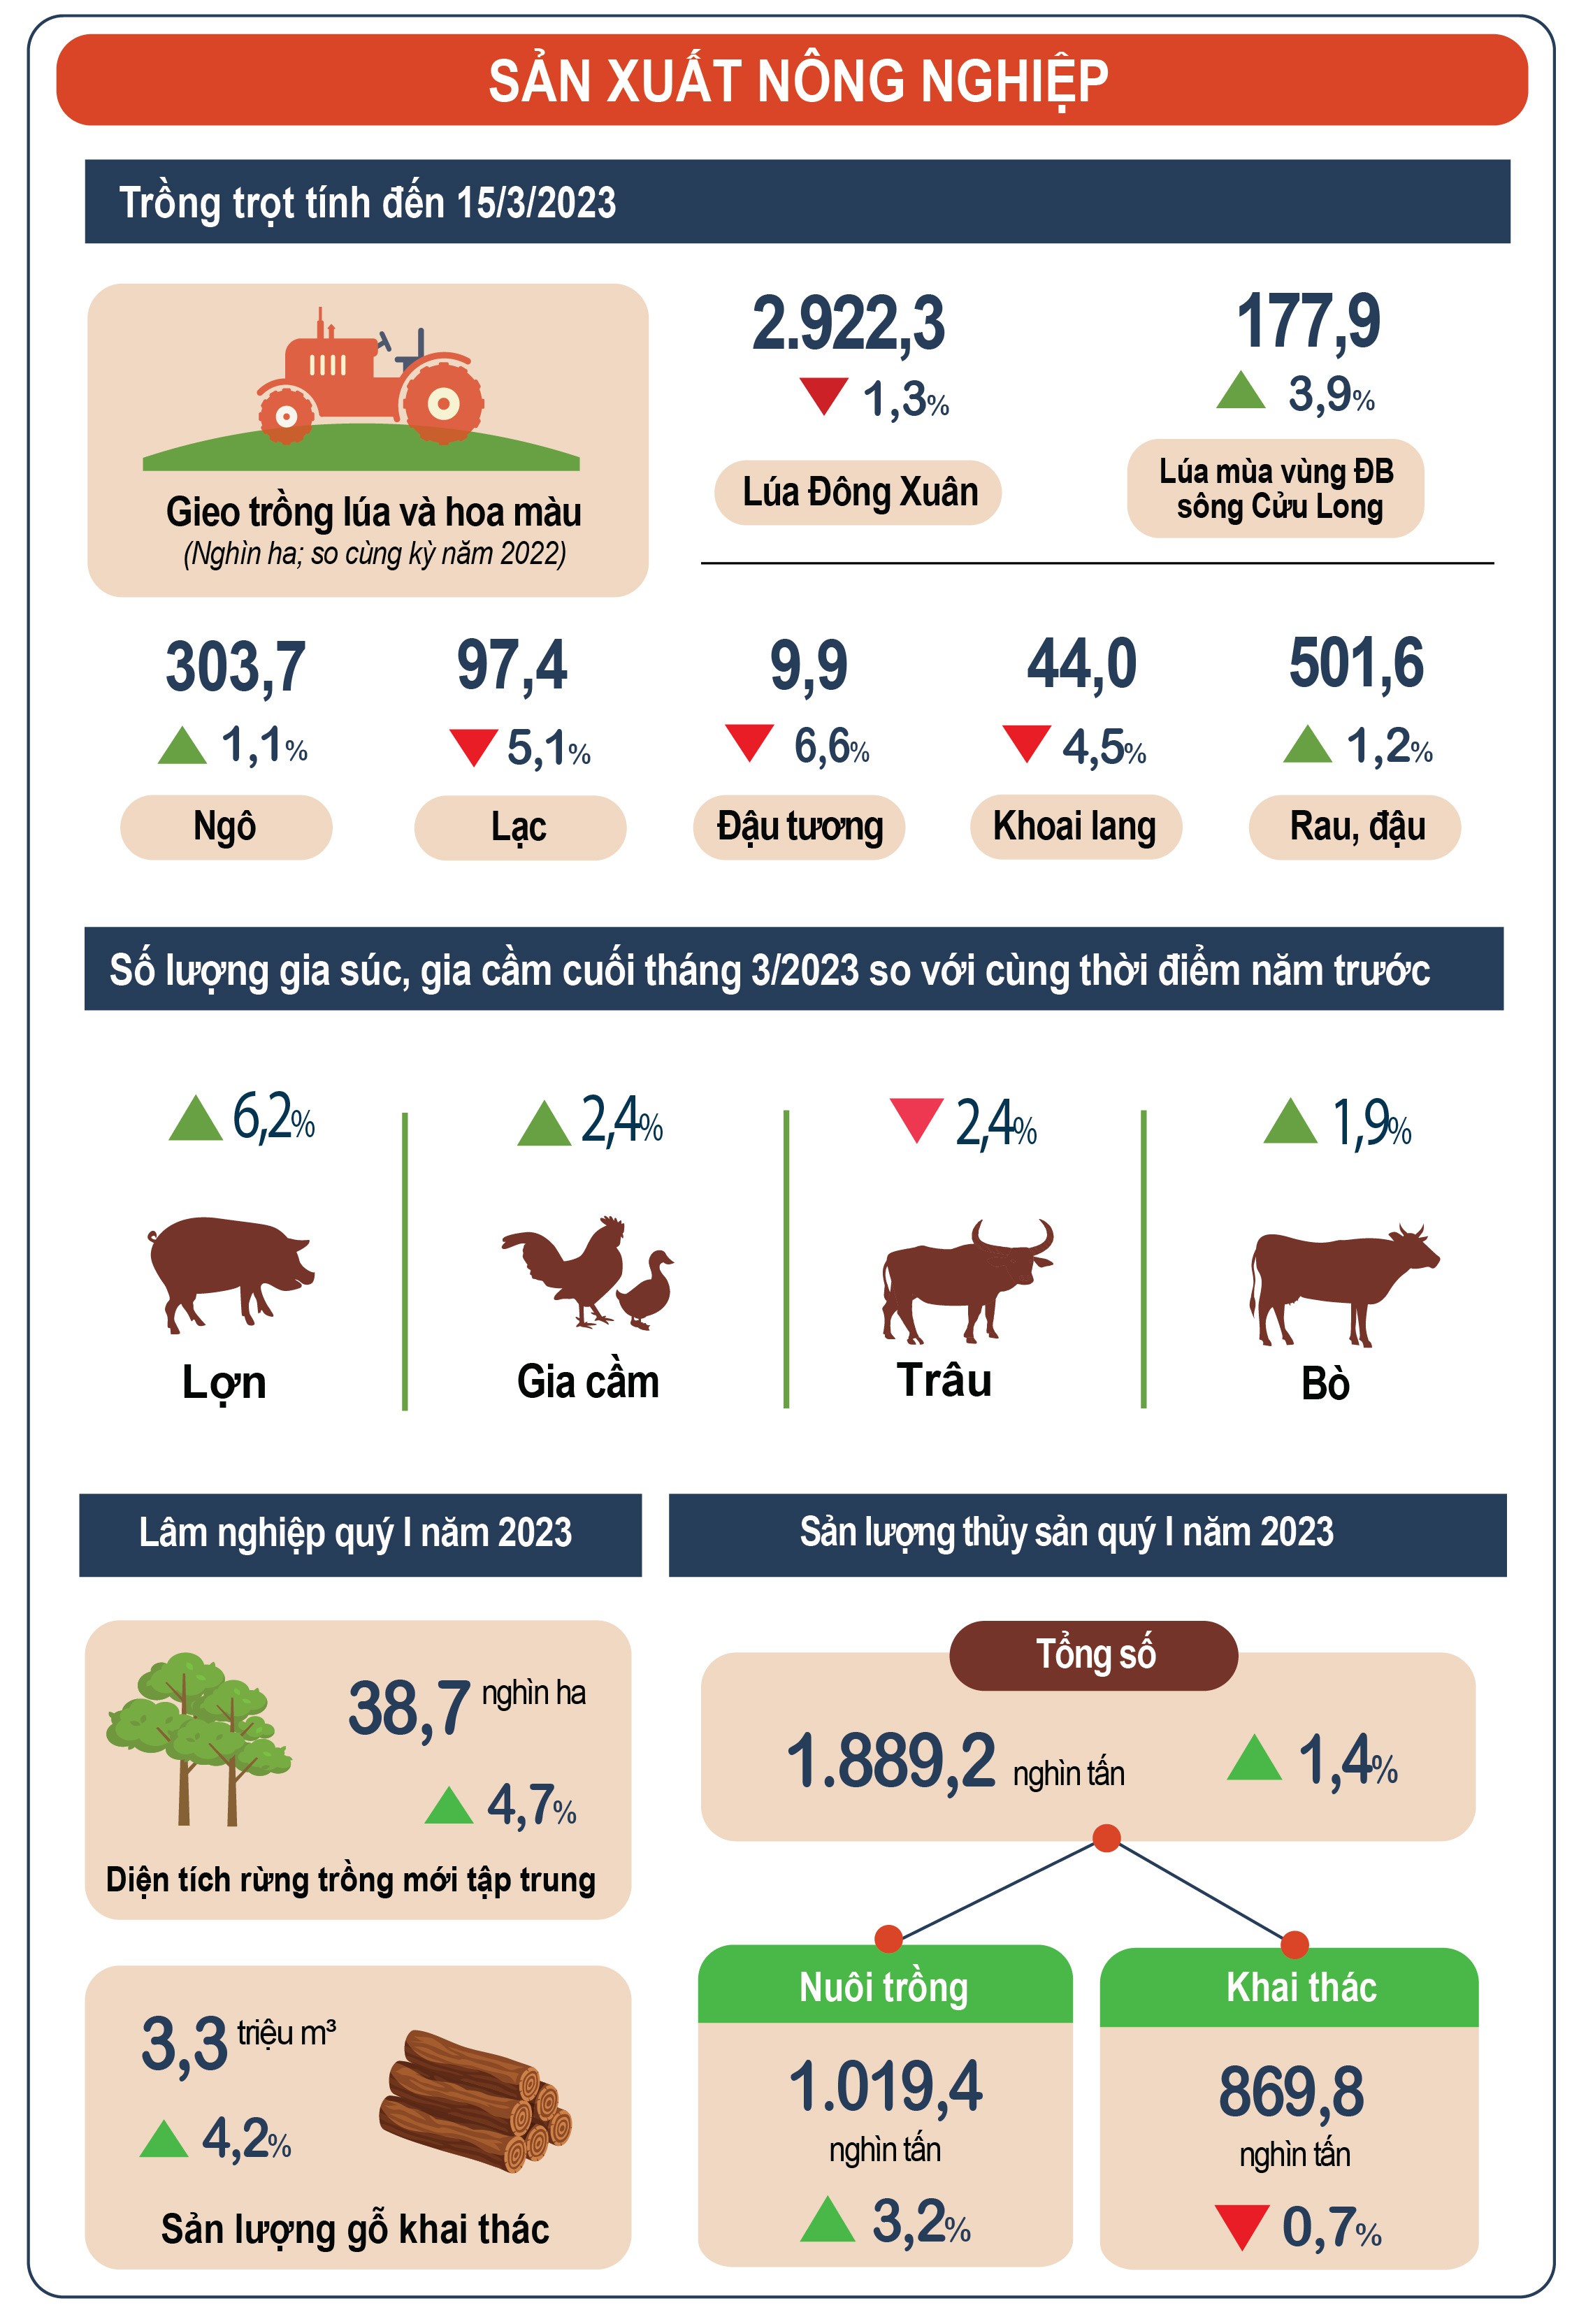 Inforgraphics: Sản xuất nông nghiệp 3 tháng đầu năm 2023